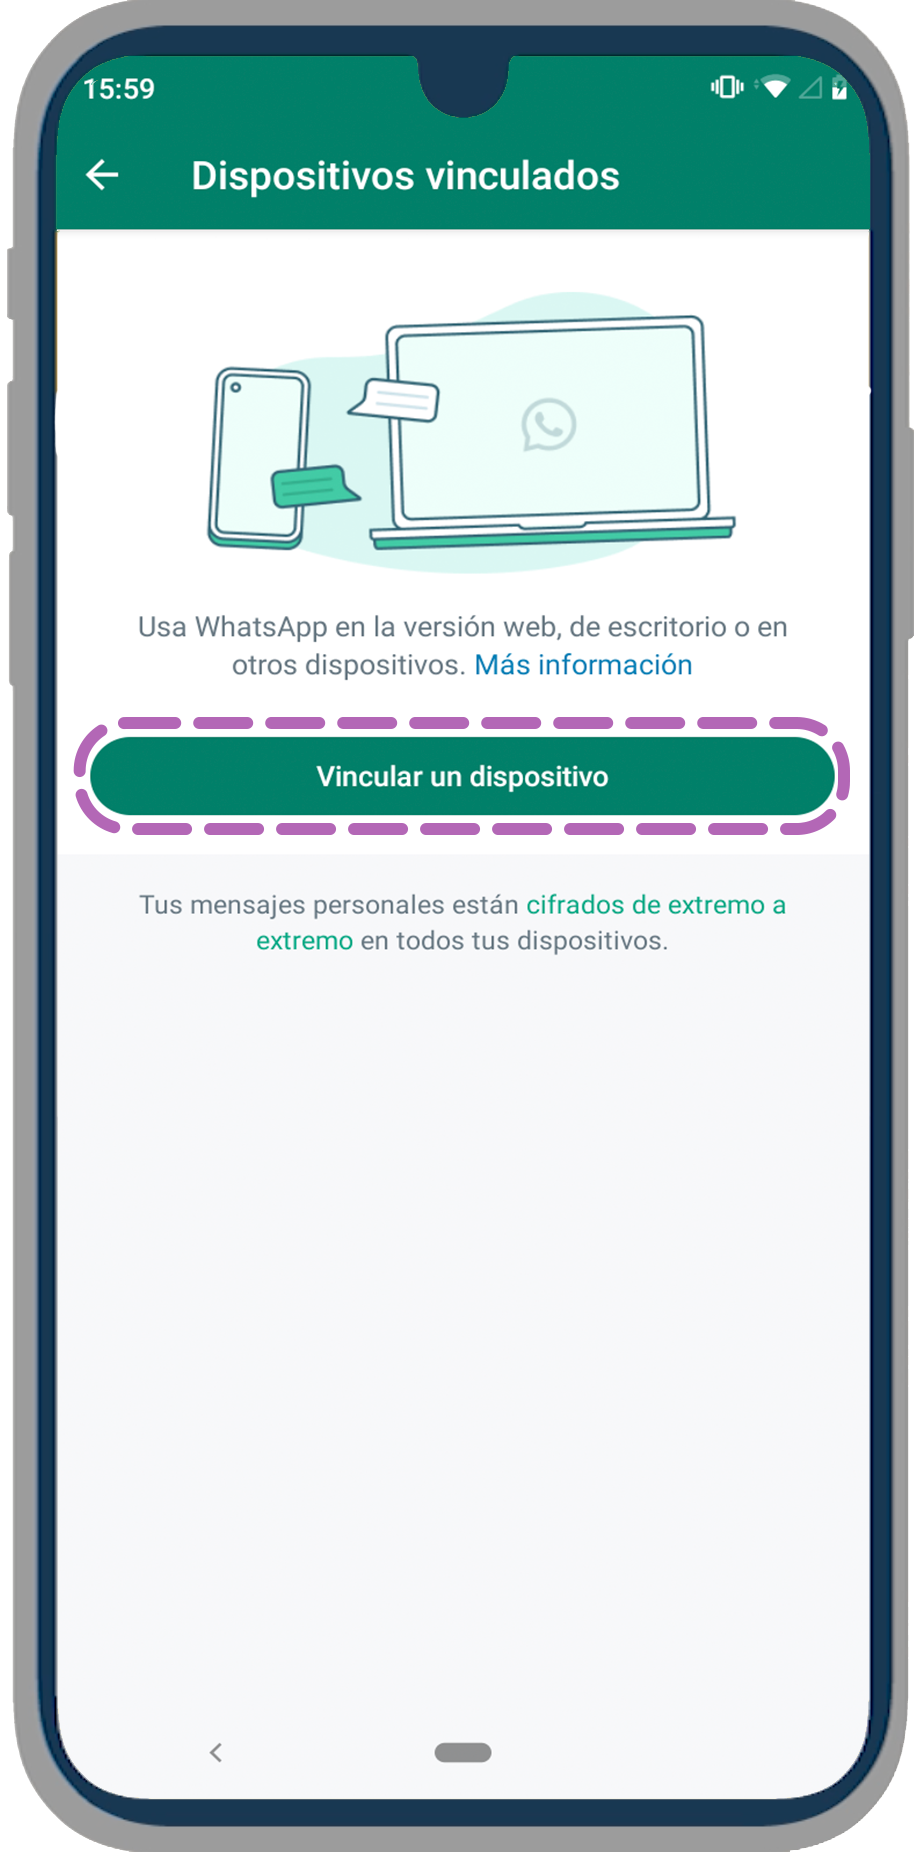 Ahora, selecciona la opción Vincular un dispositivo y escanea con tu celular el código QR que aparece en la página de WhatsApp Web.